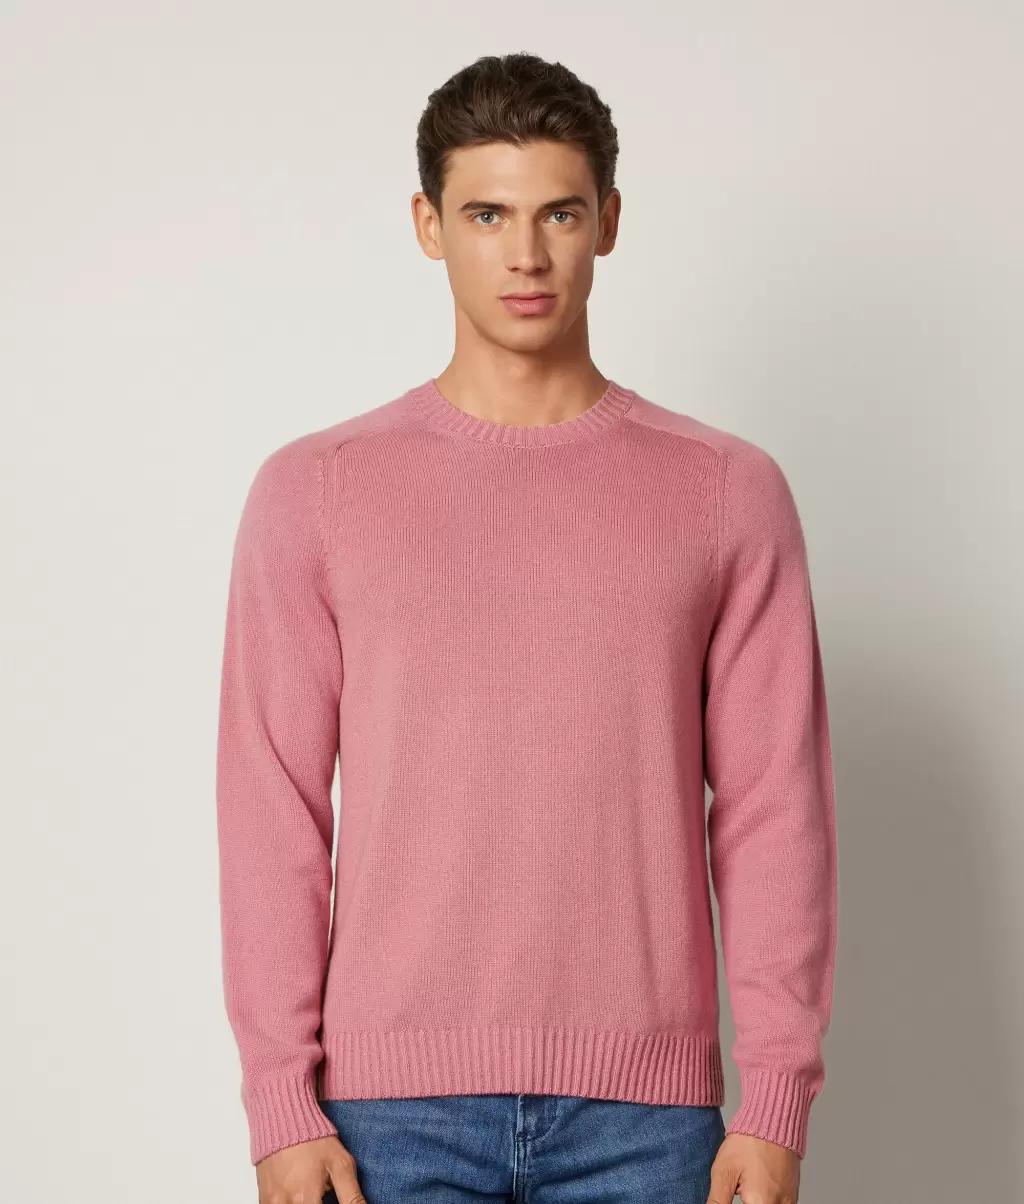 Swetry Z Okrągłym Dekoltem Pale_Pink Pulower Z Kaszmiru Ultrasoft Falconeri Mężczyzna - 1